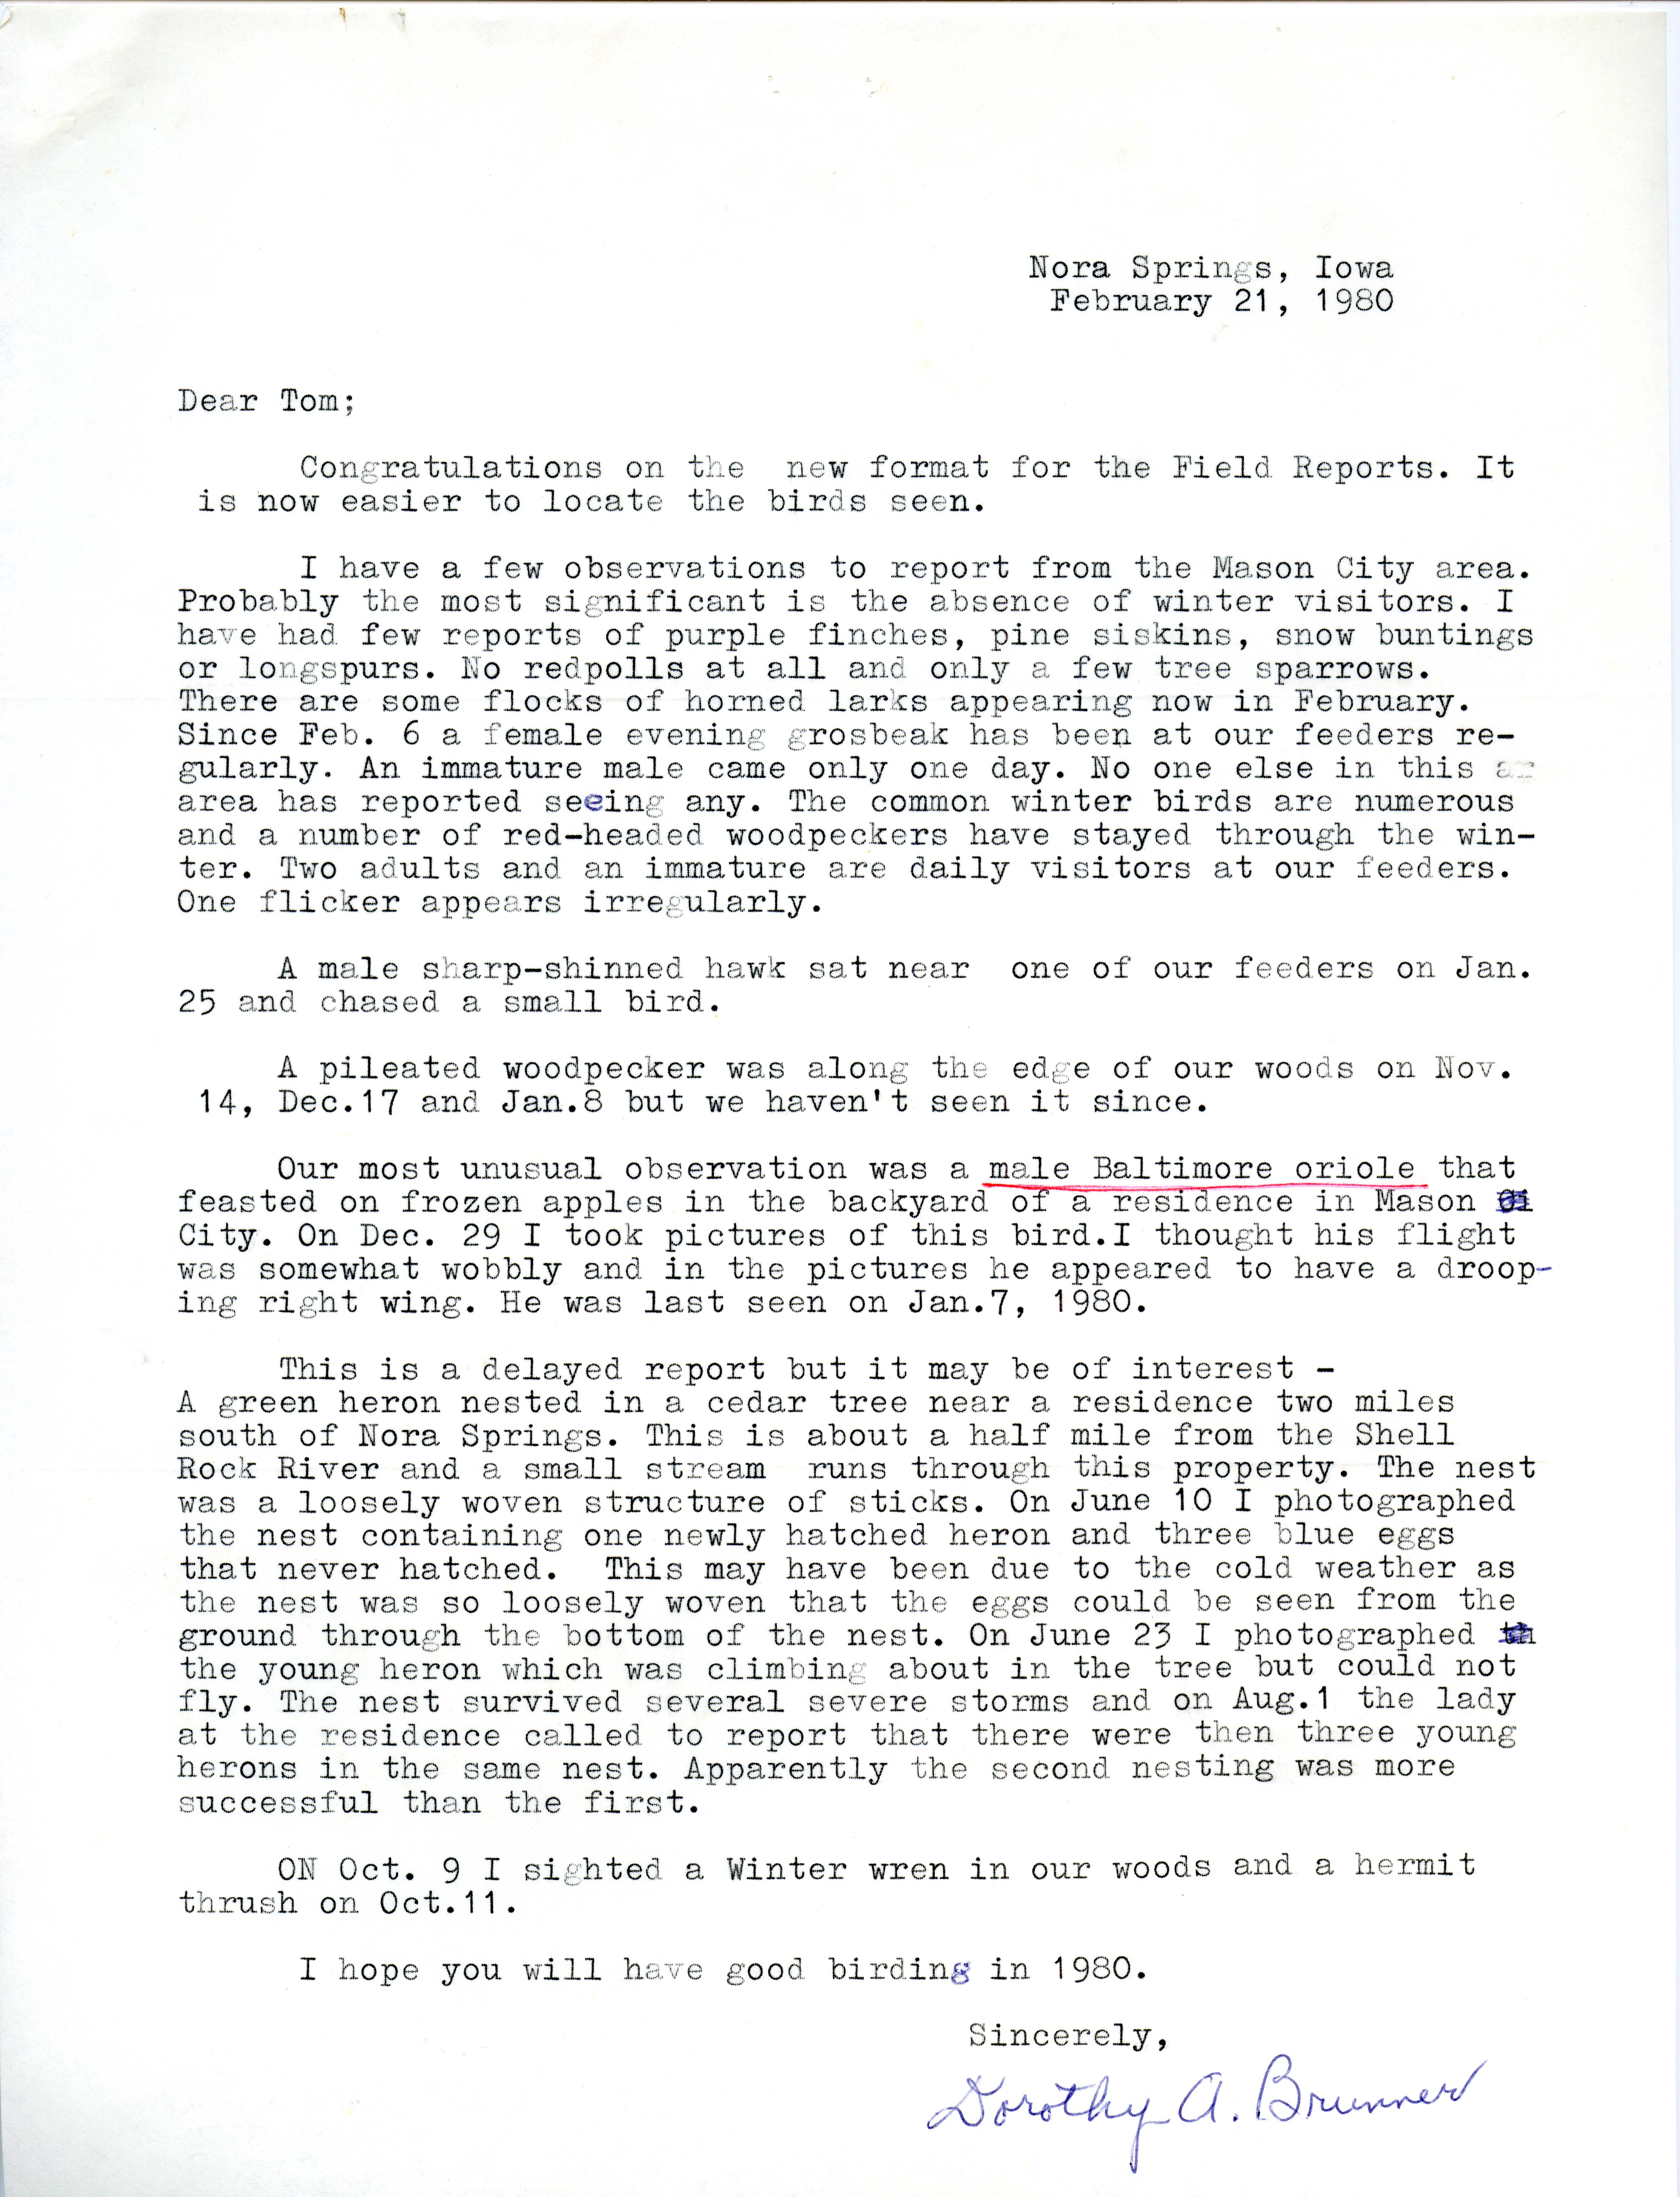 Dorothy A. Brunner letter to Thomas H. Kent regarding bird sightings, February 21, 1980